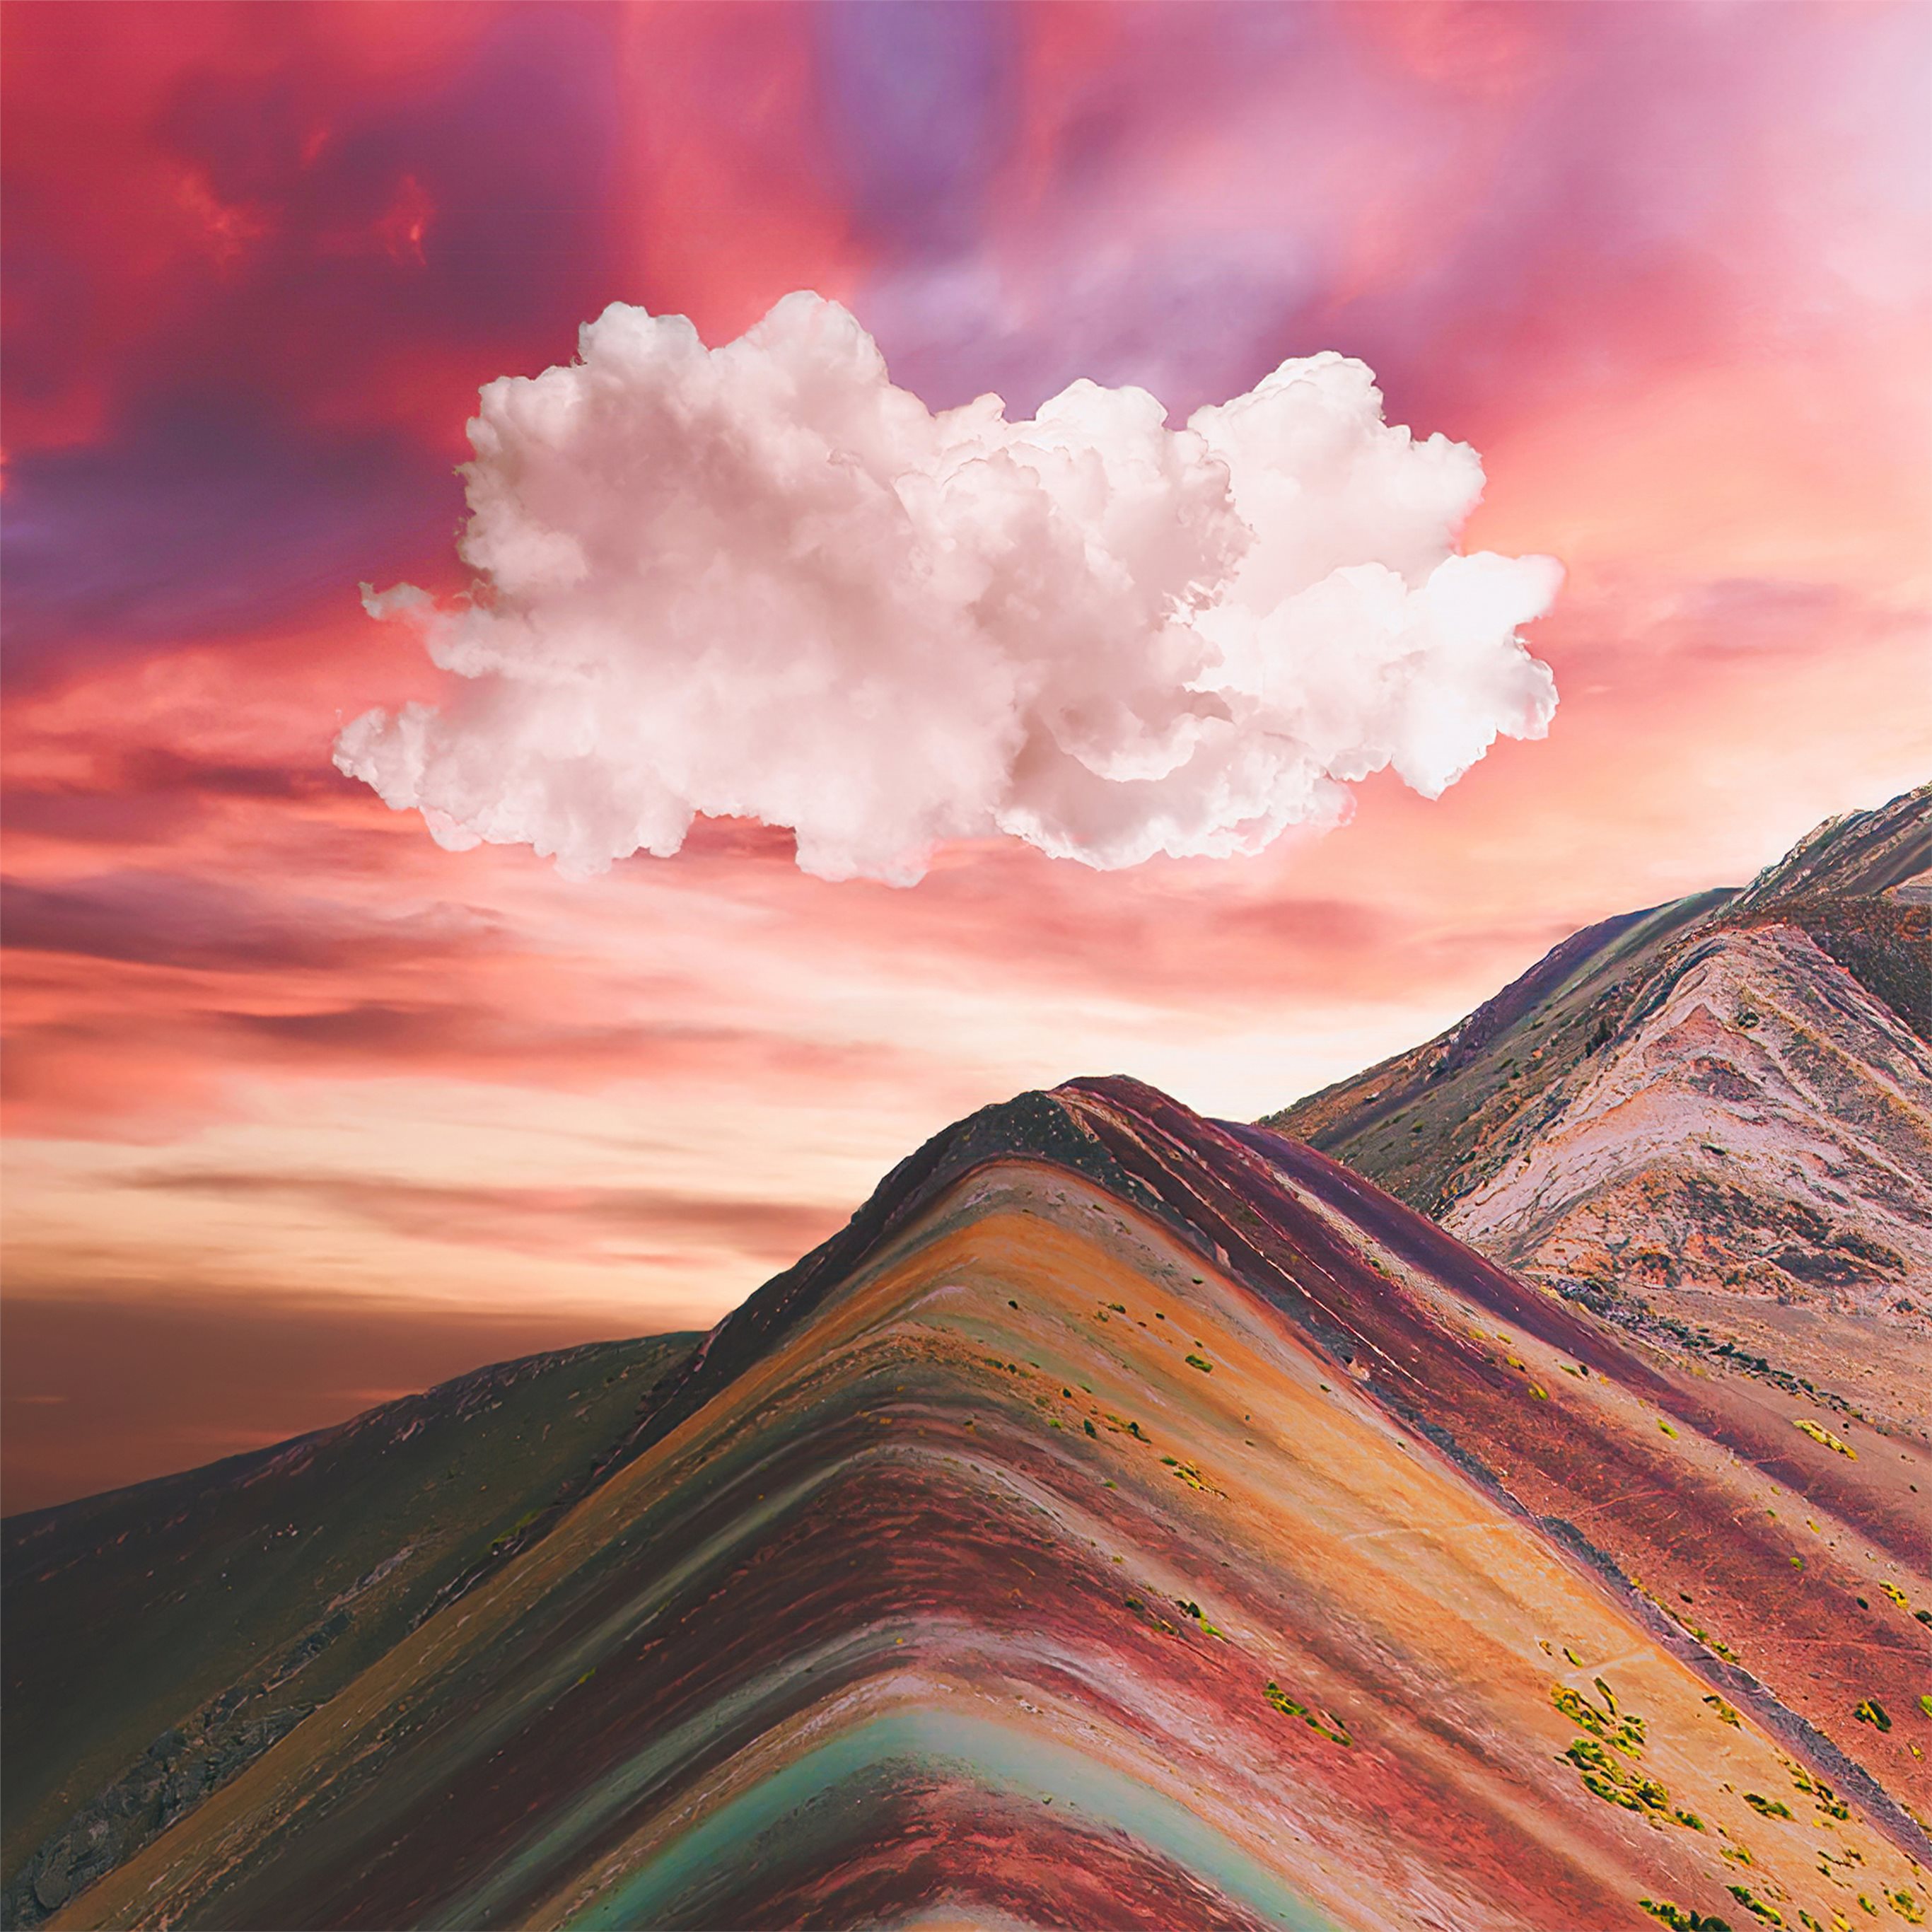 Vinicunca - núi cầu vồng rực rỡ là một điểm đến du lịch khiến cho bất cứ ai cũng phải ngạc nhiên và thích thú. Hình ảnh này cho thấy một khoảnh khắc tuyệt vời đang chờ đón bạn ở đây. Cùng chiêm ngưỡng huyền bí của núi Vinicunca với hình nền đầy màu sắc này nhé!